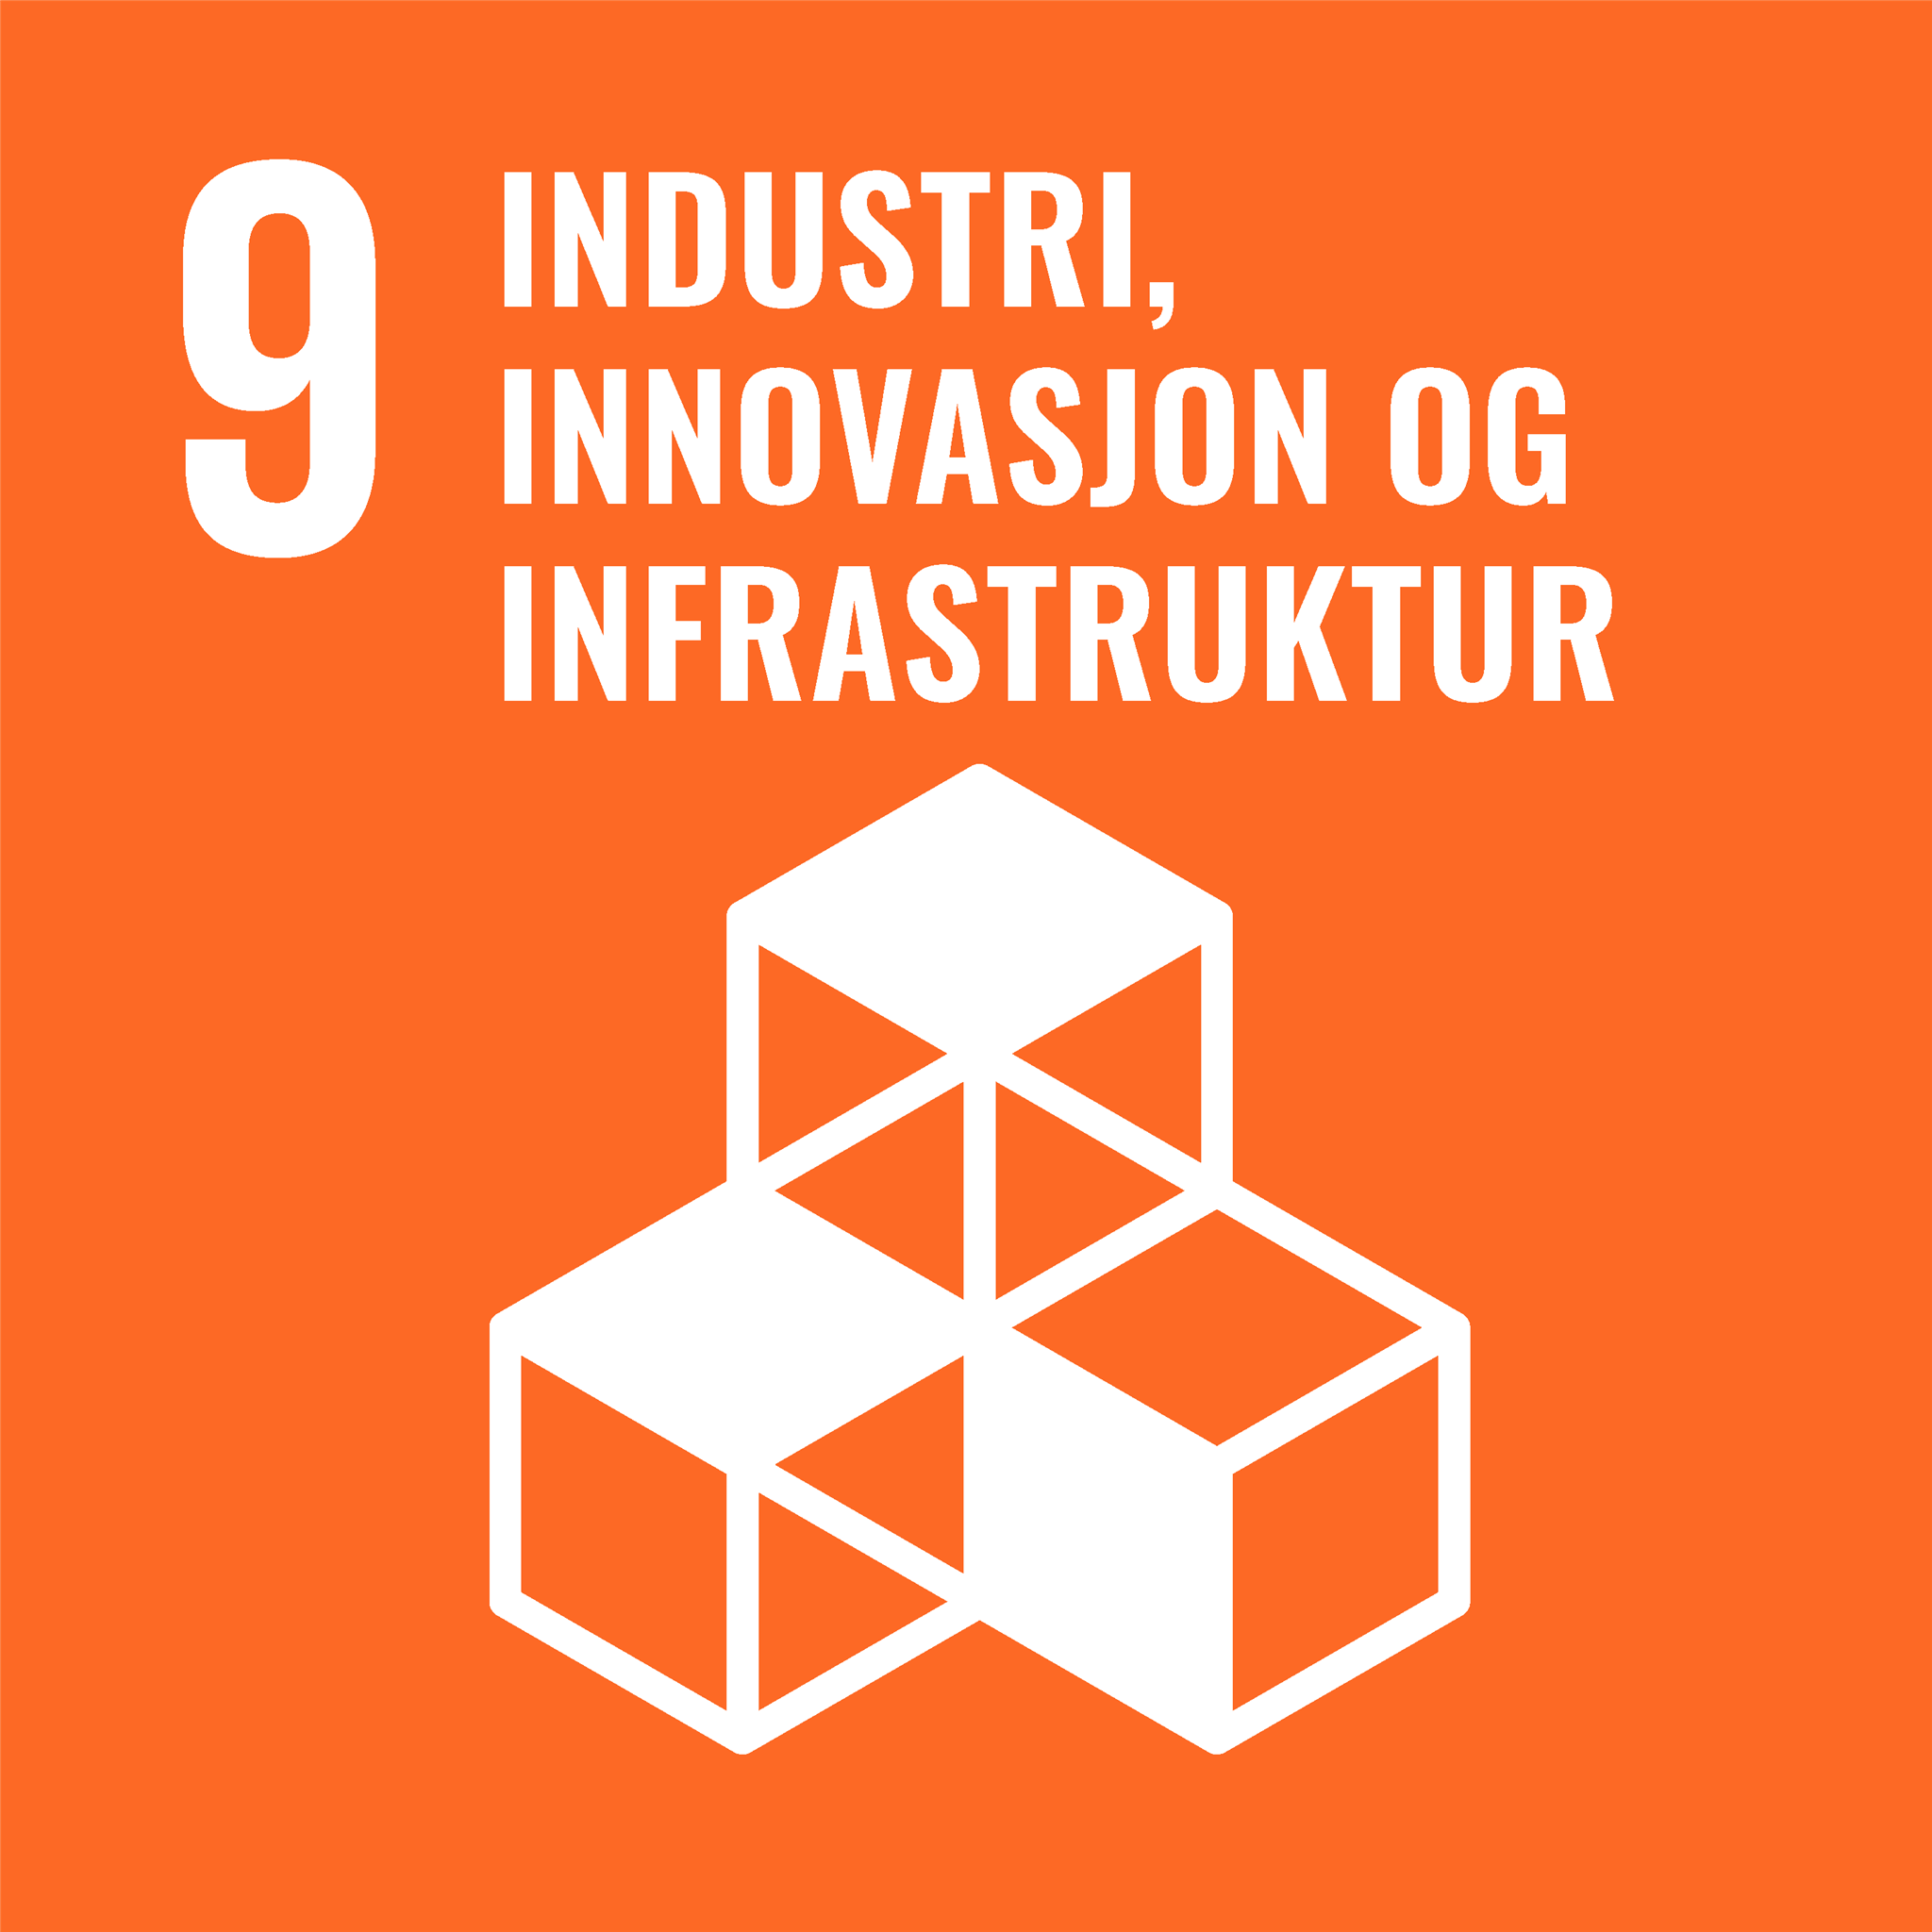 9. Industri, innovasjon og infrastruktur